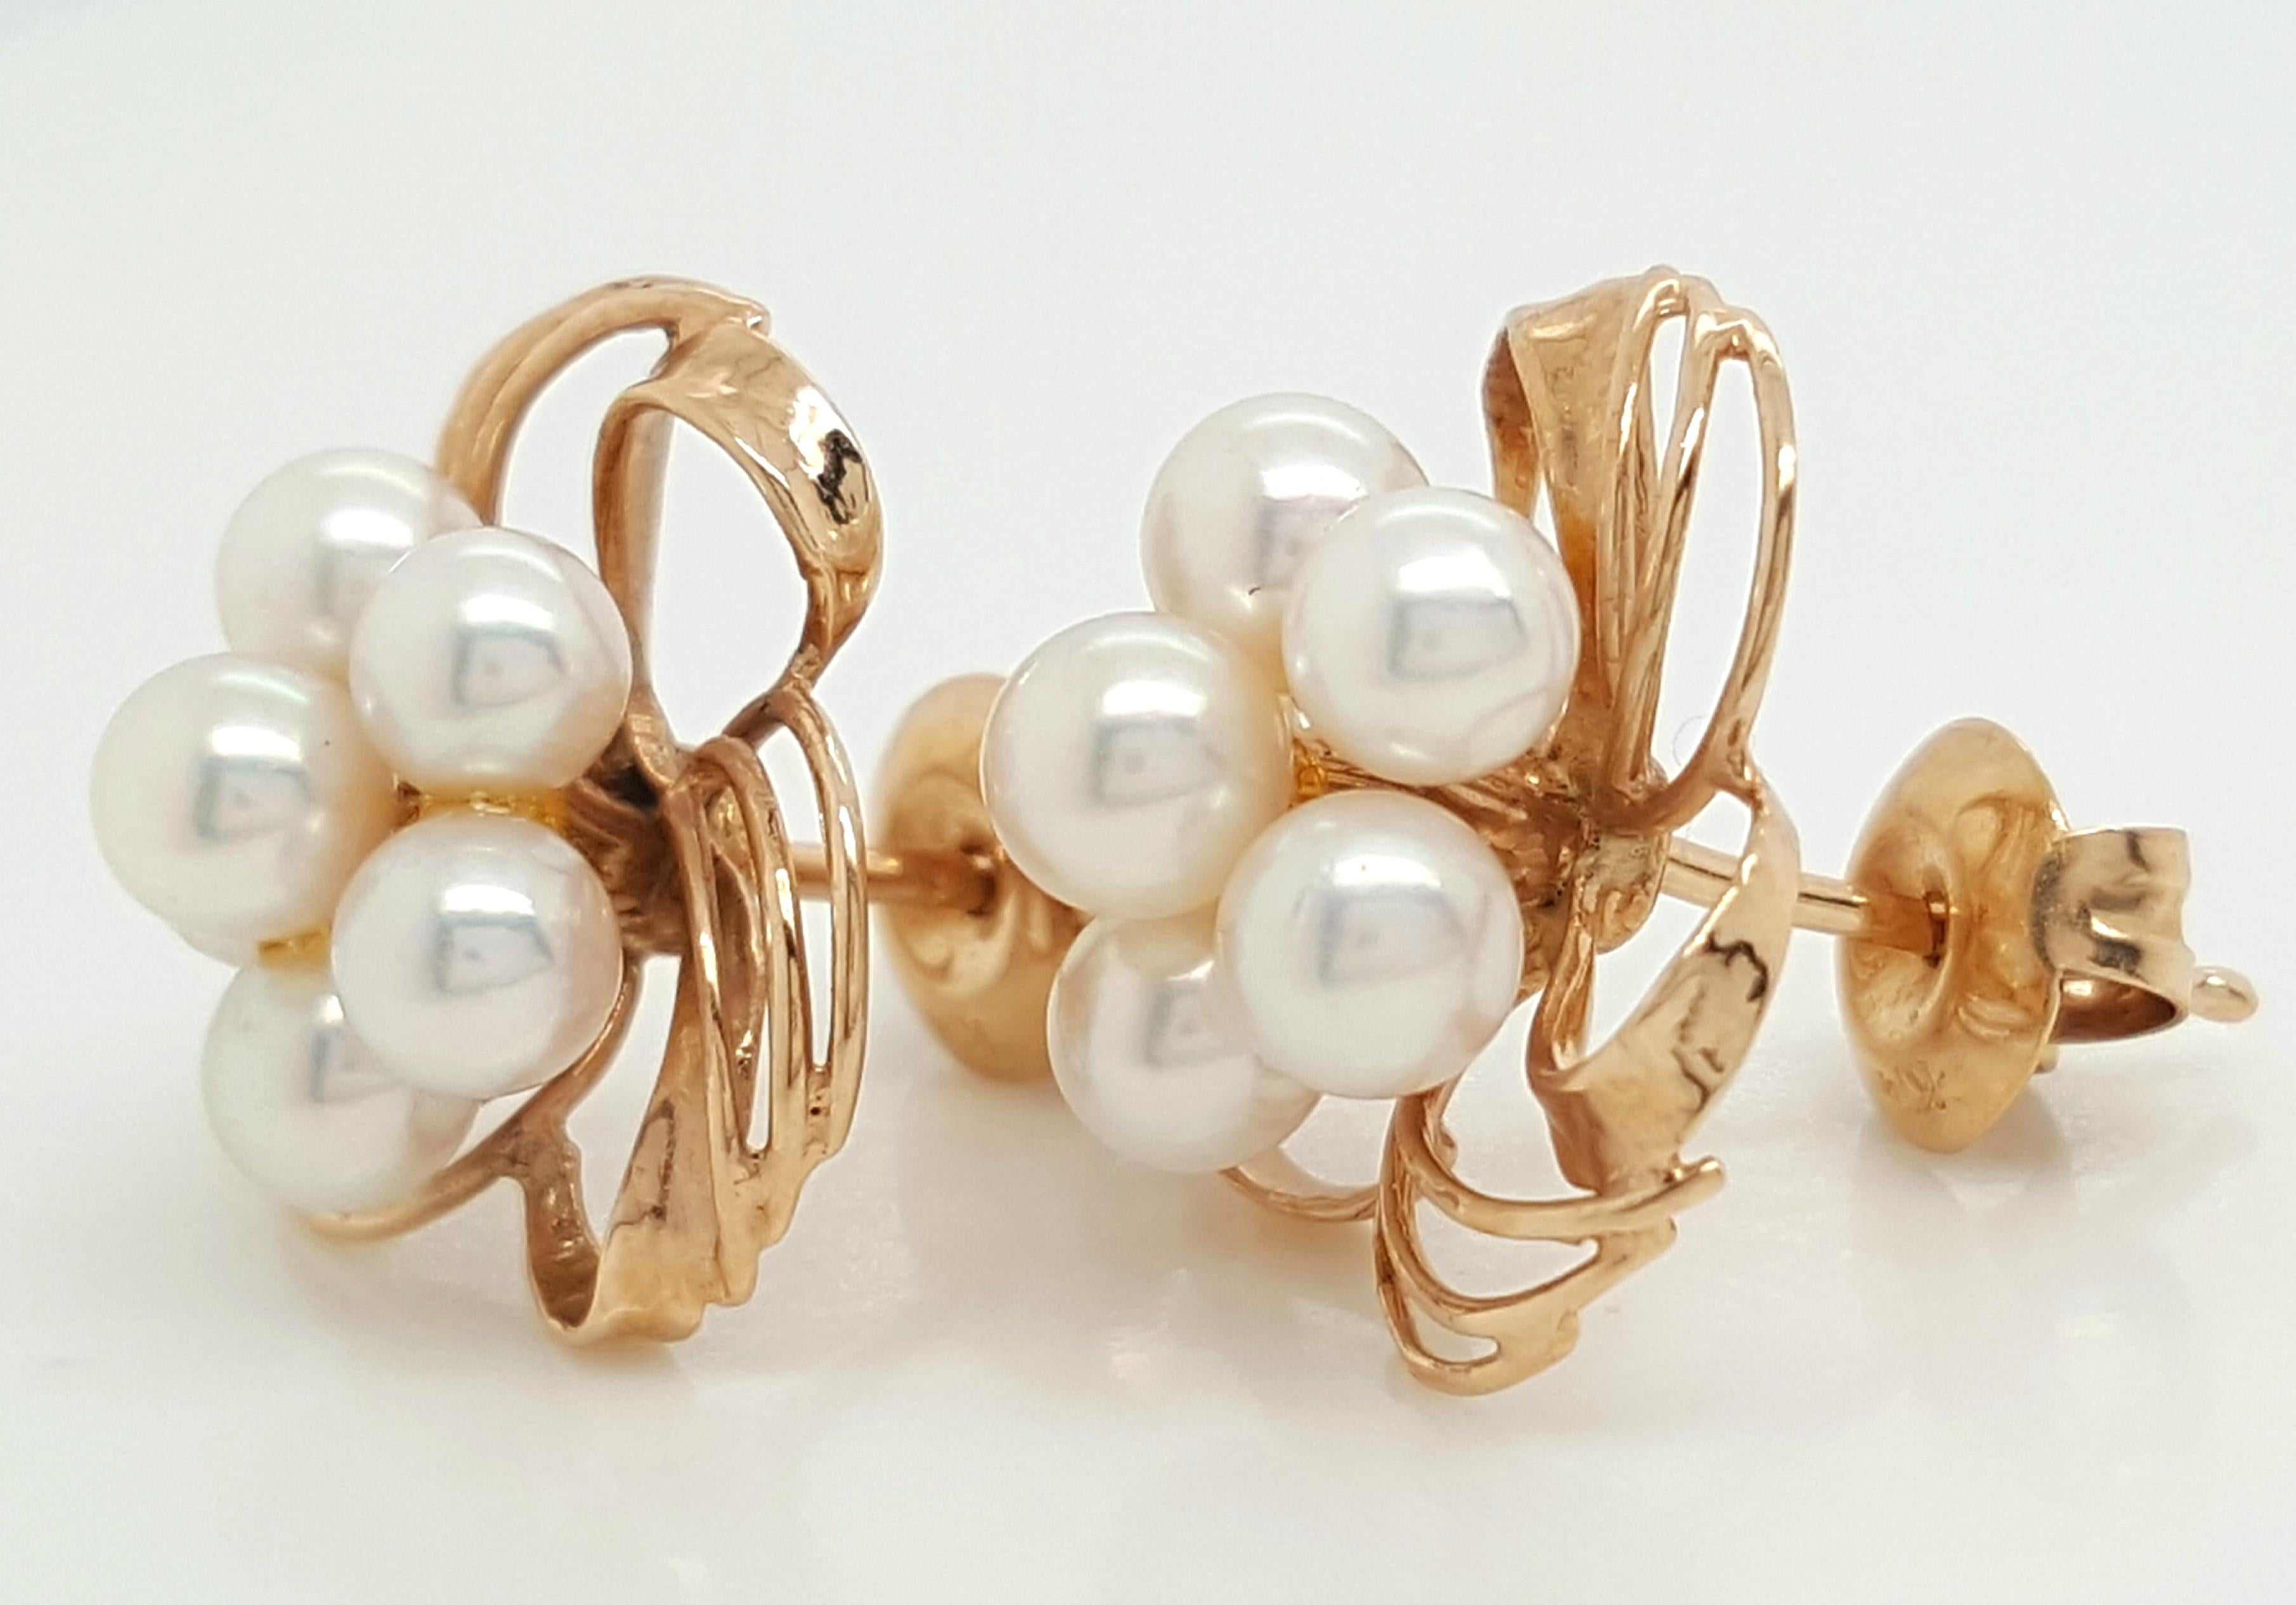 gold flower pearl earrings